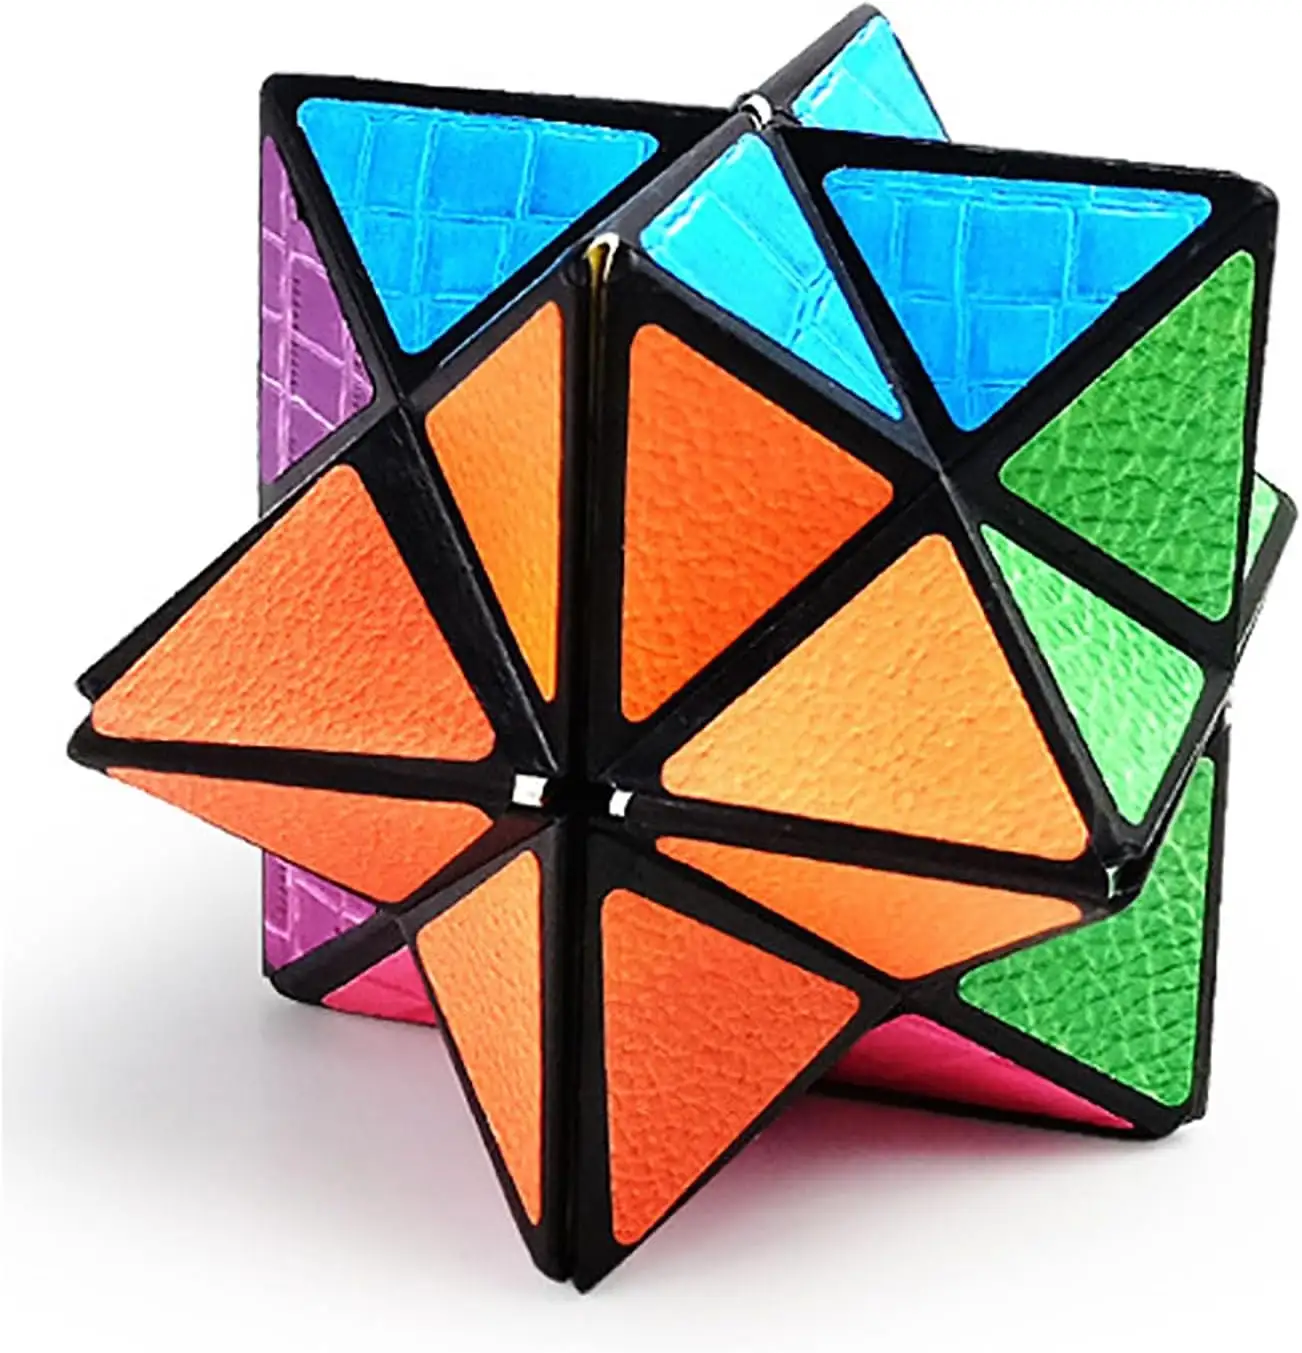 Cubo mágico de cubos infinitos, blocos de brinquedo sensoriais para alívio do estresse e ansiedade, cubo de estrela para adultos e crianças